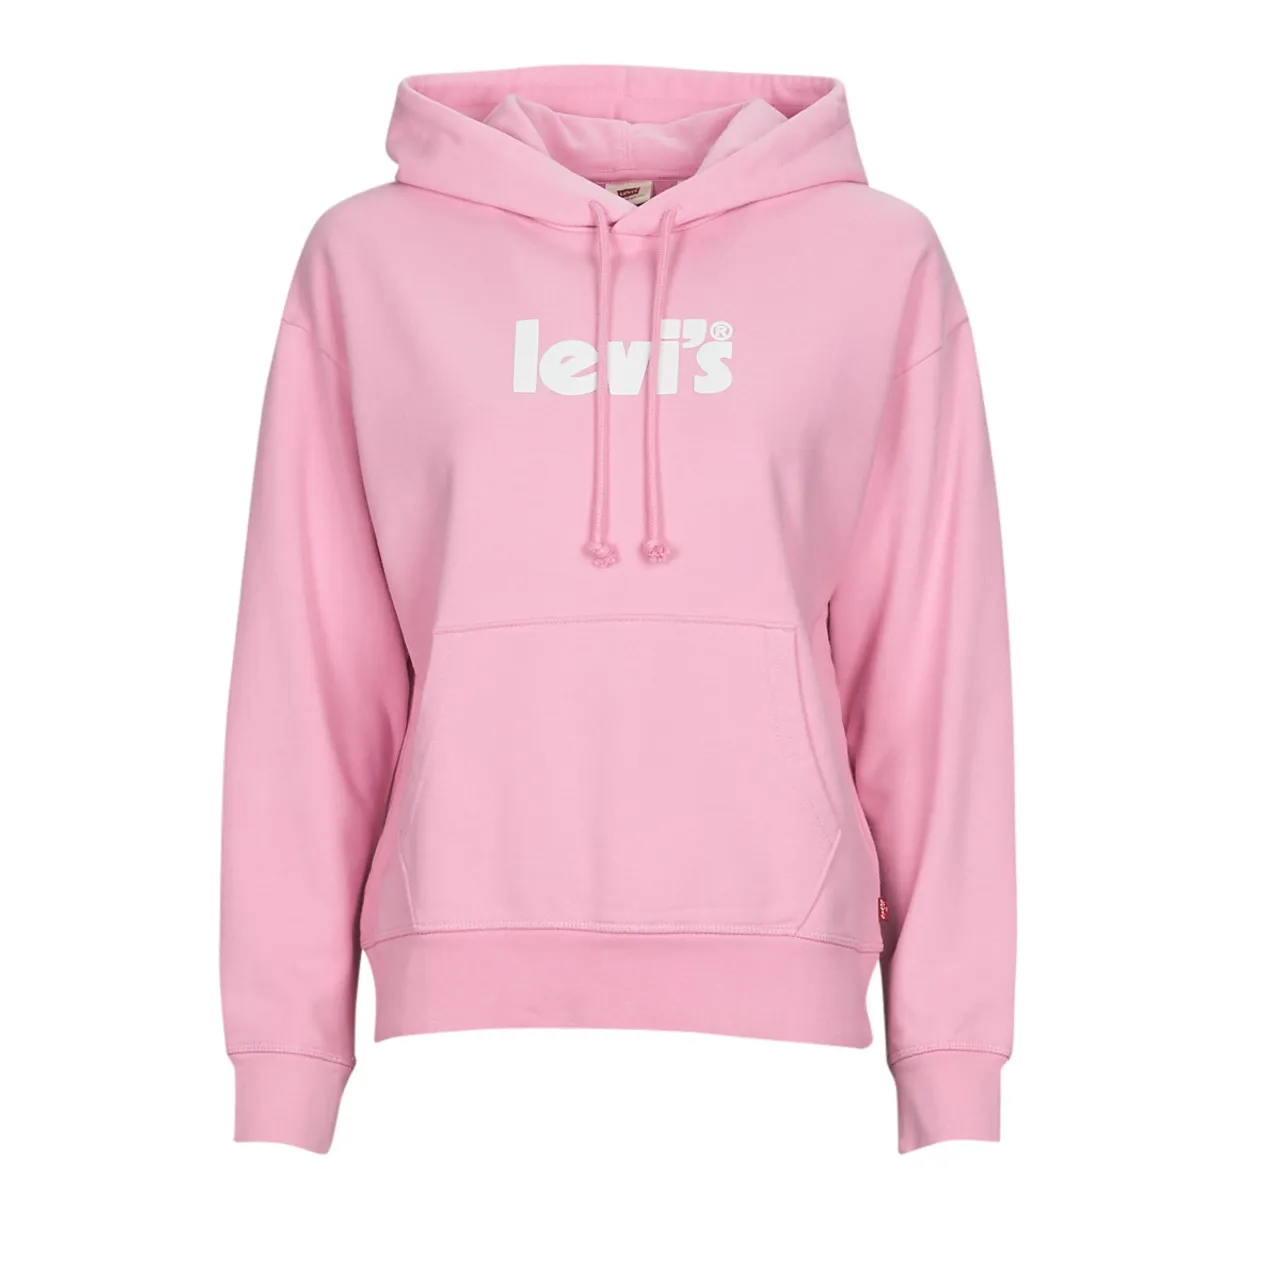 Levis  GRAPHIC STANDARD HOODIE  women's Sweatshirt in Pink